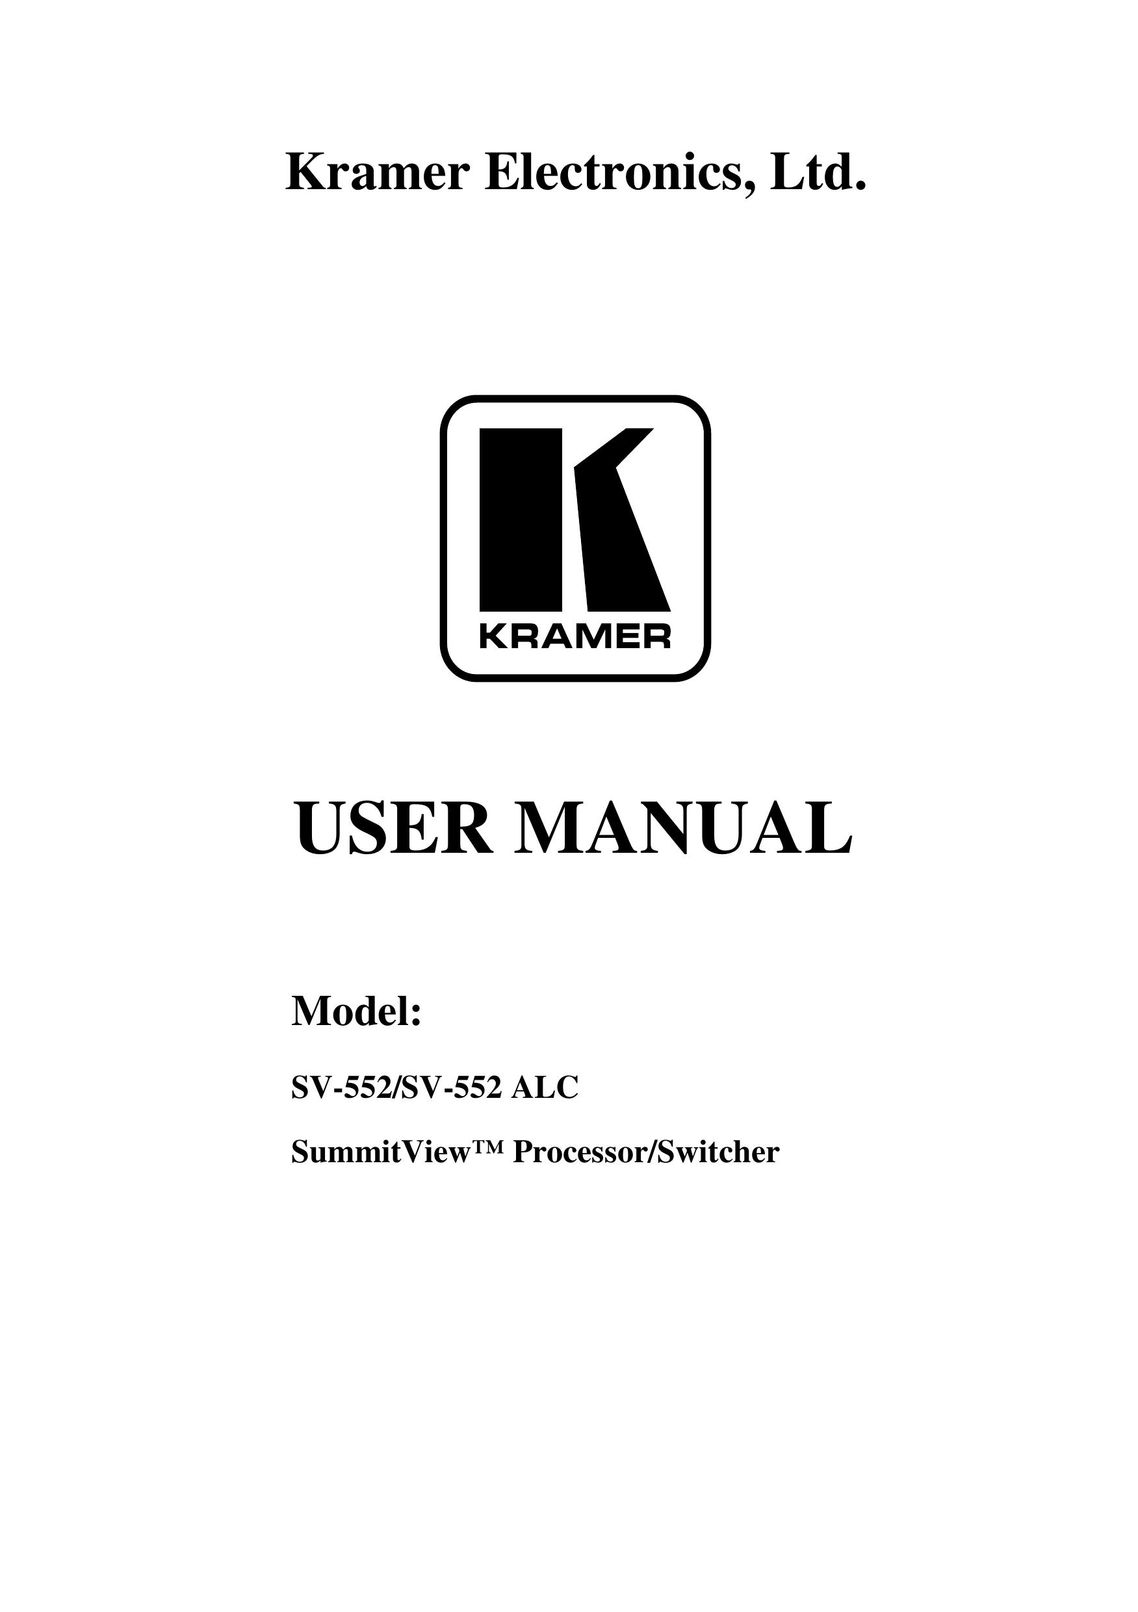 Kramer Electronics SV-552 Typewriter User Manual